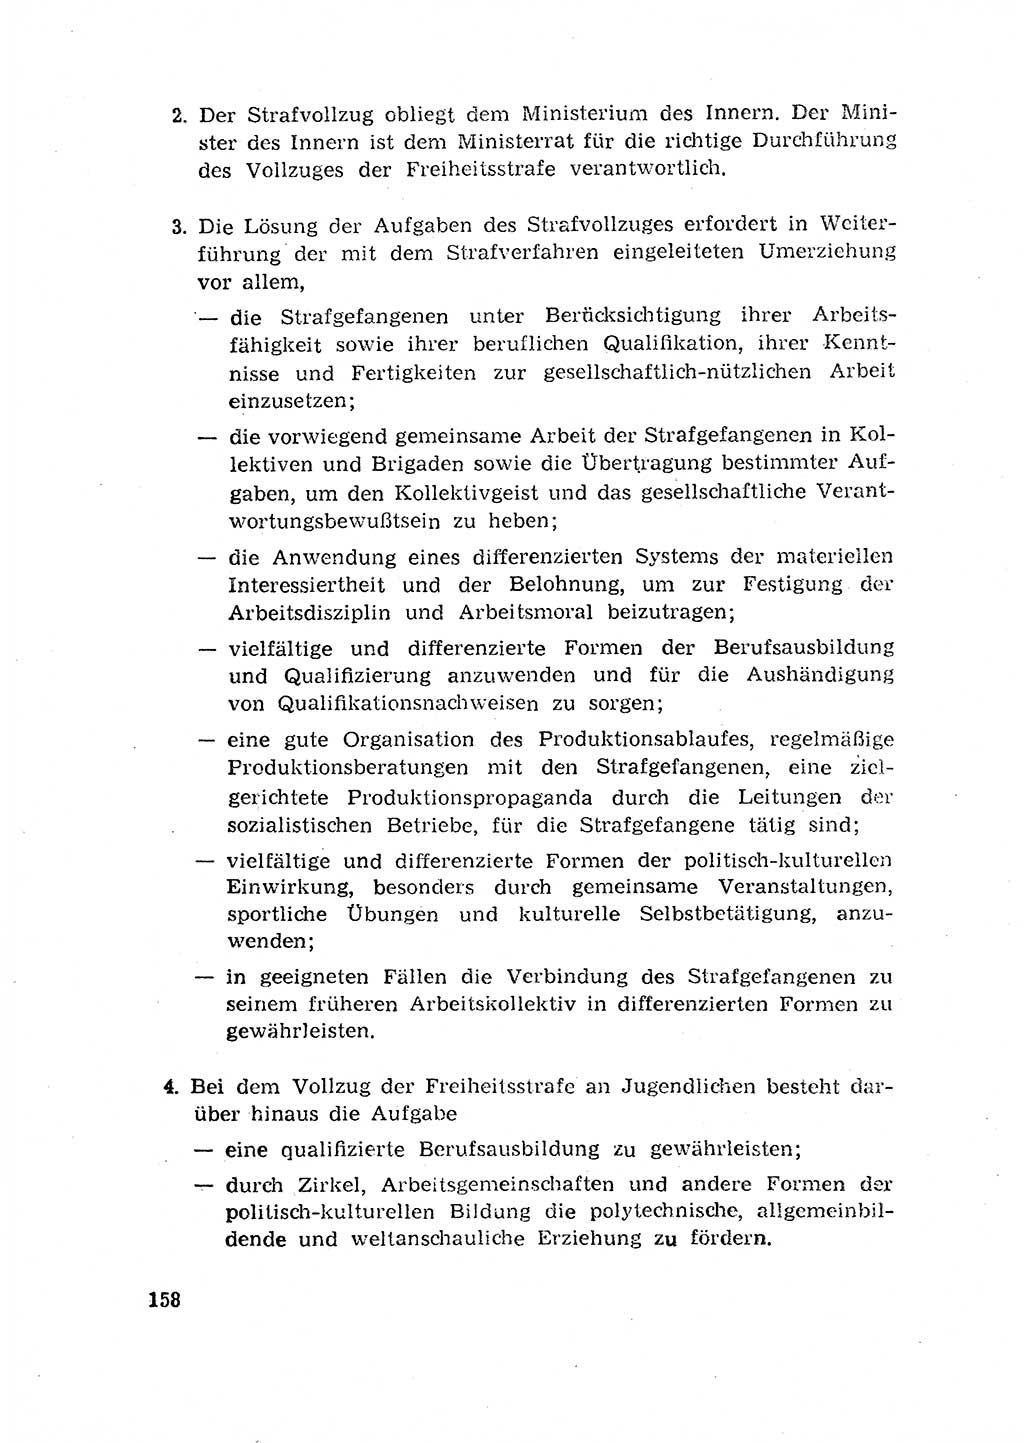 Rechtspflegeerlaß [Deutsche Demokratische Republik (DDR)] 1963, Seite 158 (R.-Pfl.-Erl. DDR 1963, S. 158)